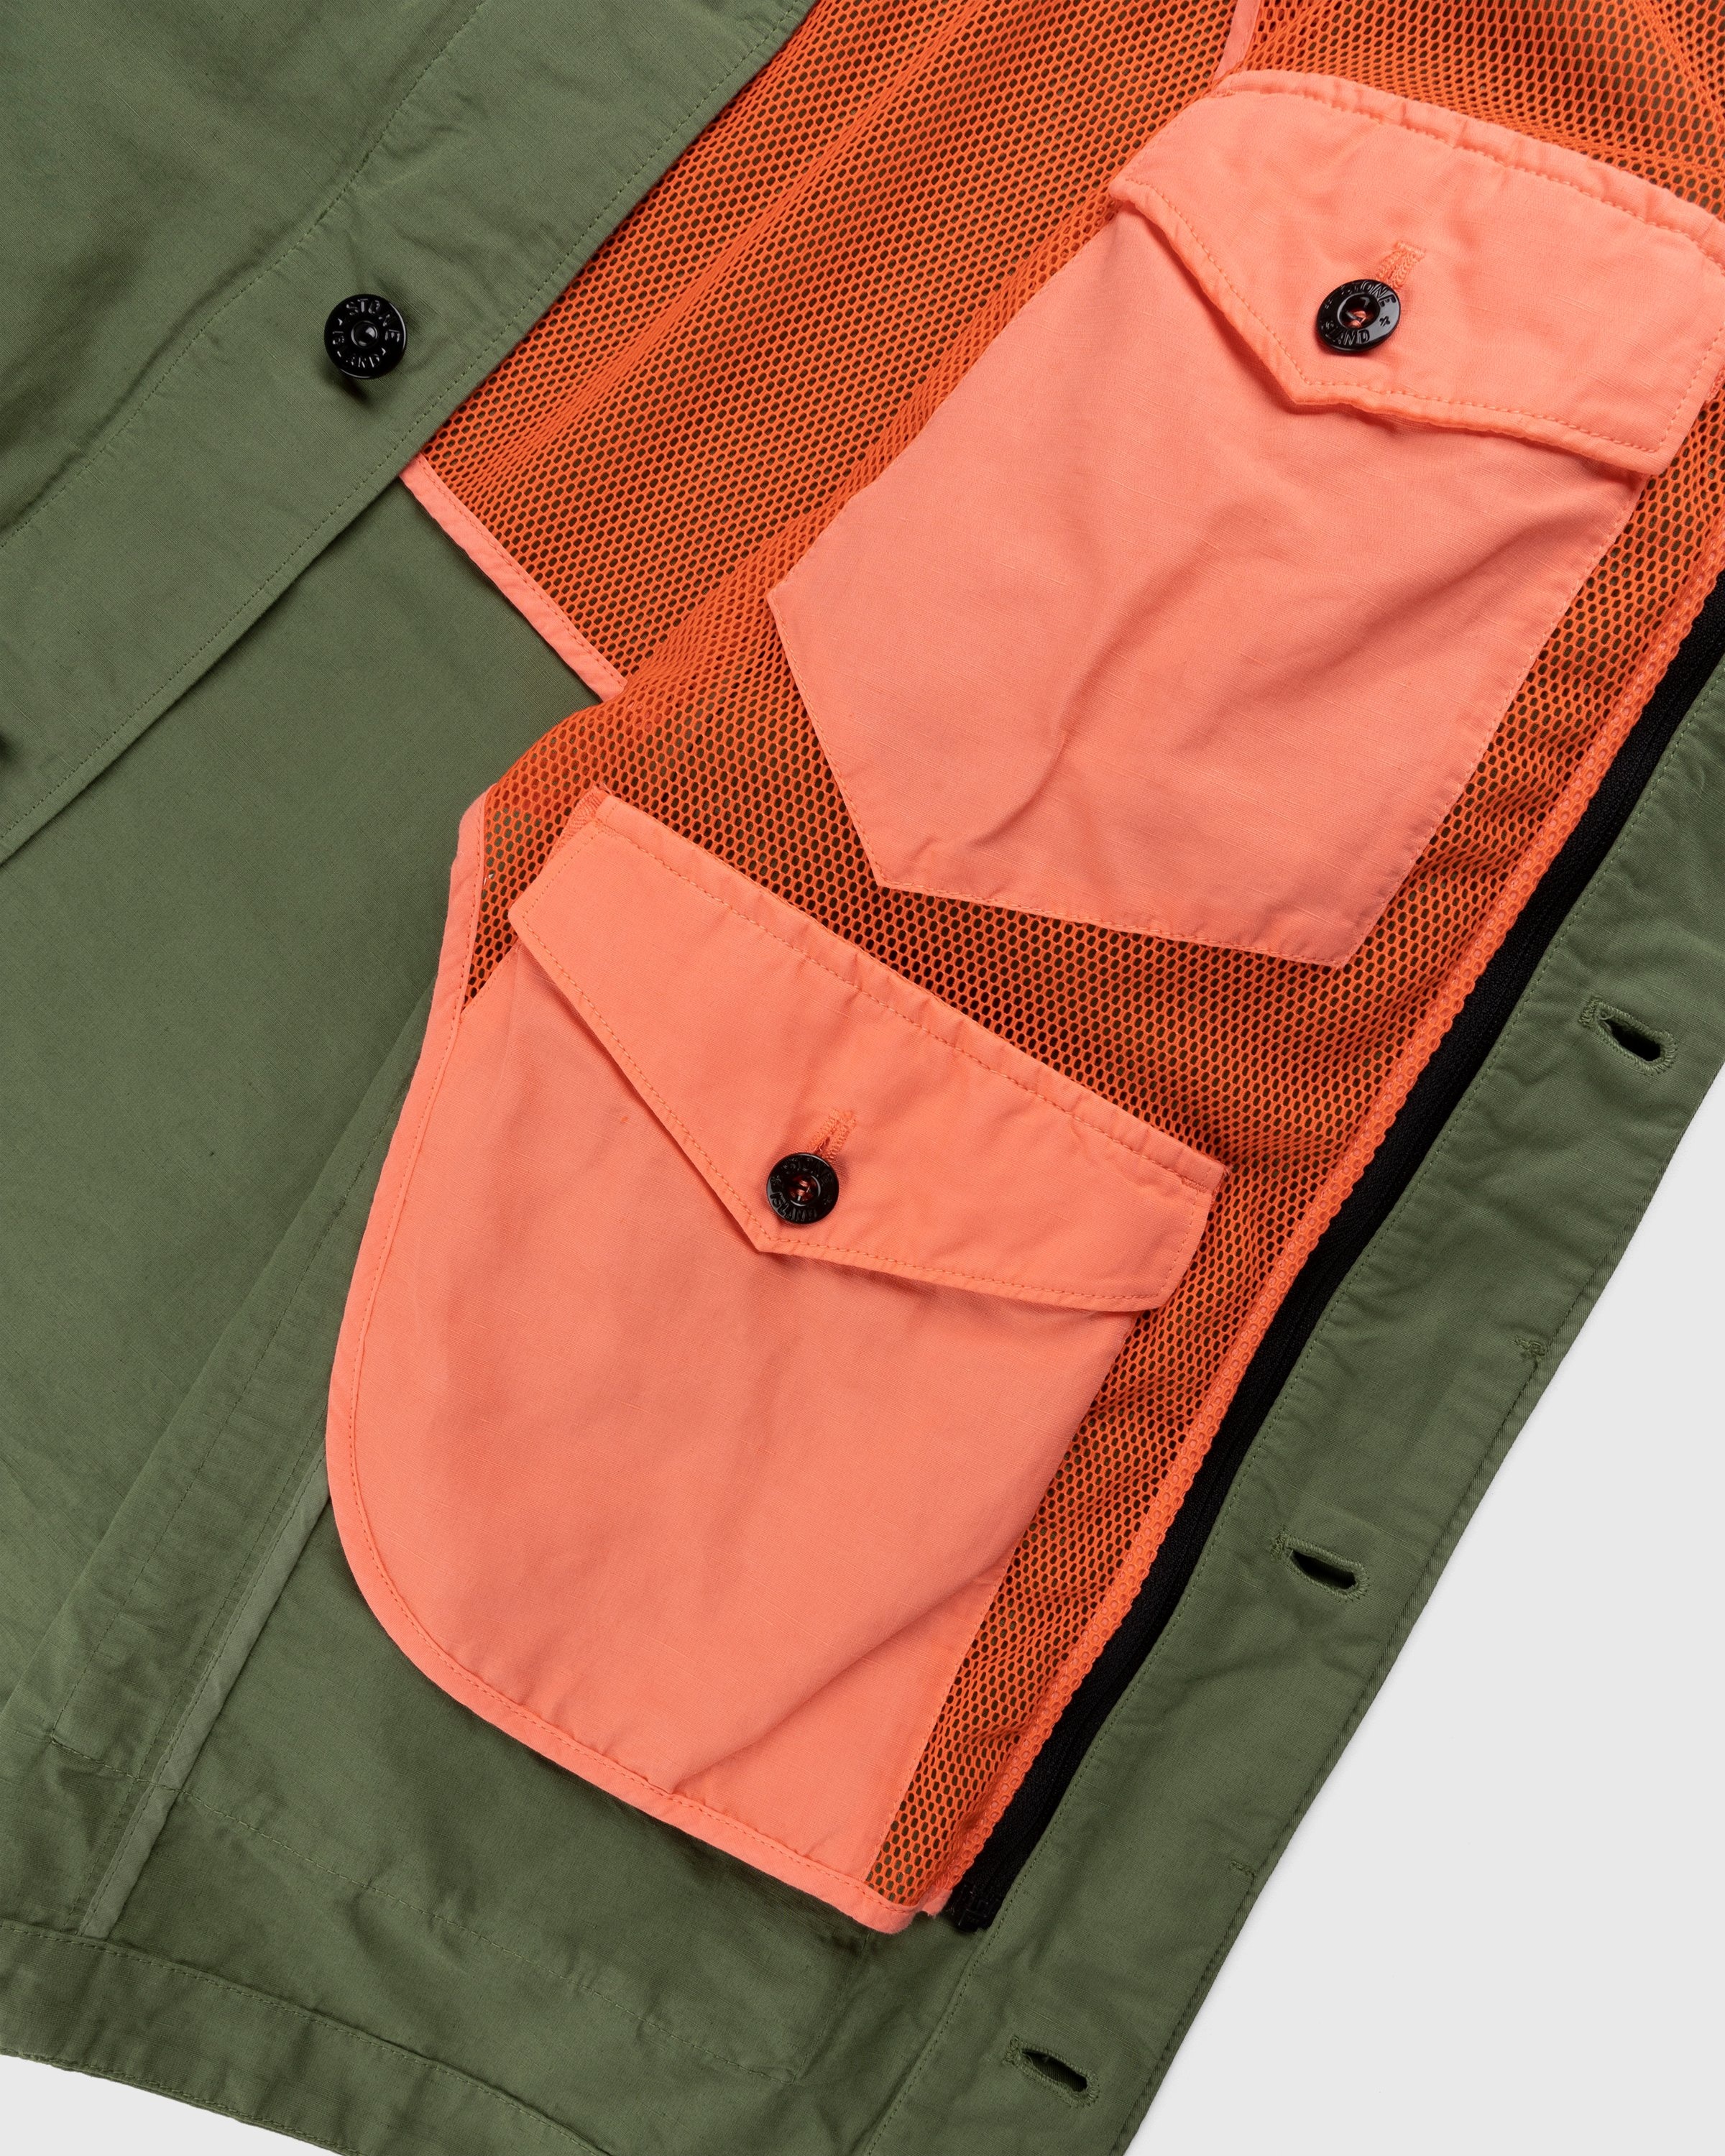 Stone Island – 42406 Garment-Dyed Shirt Jacket With Detachable Vest Olive - Shortsleeve Shirts - Green - Image 7